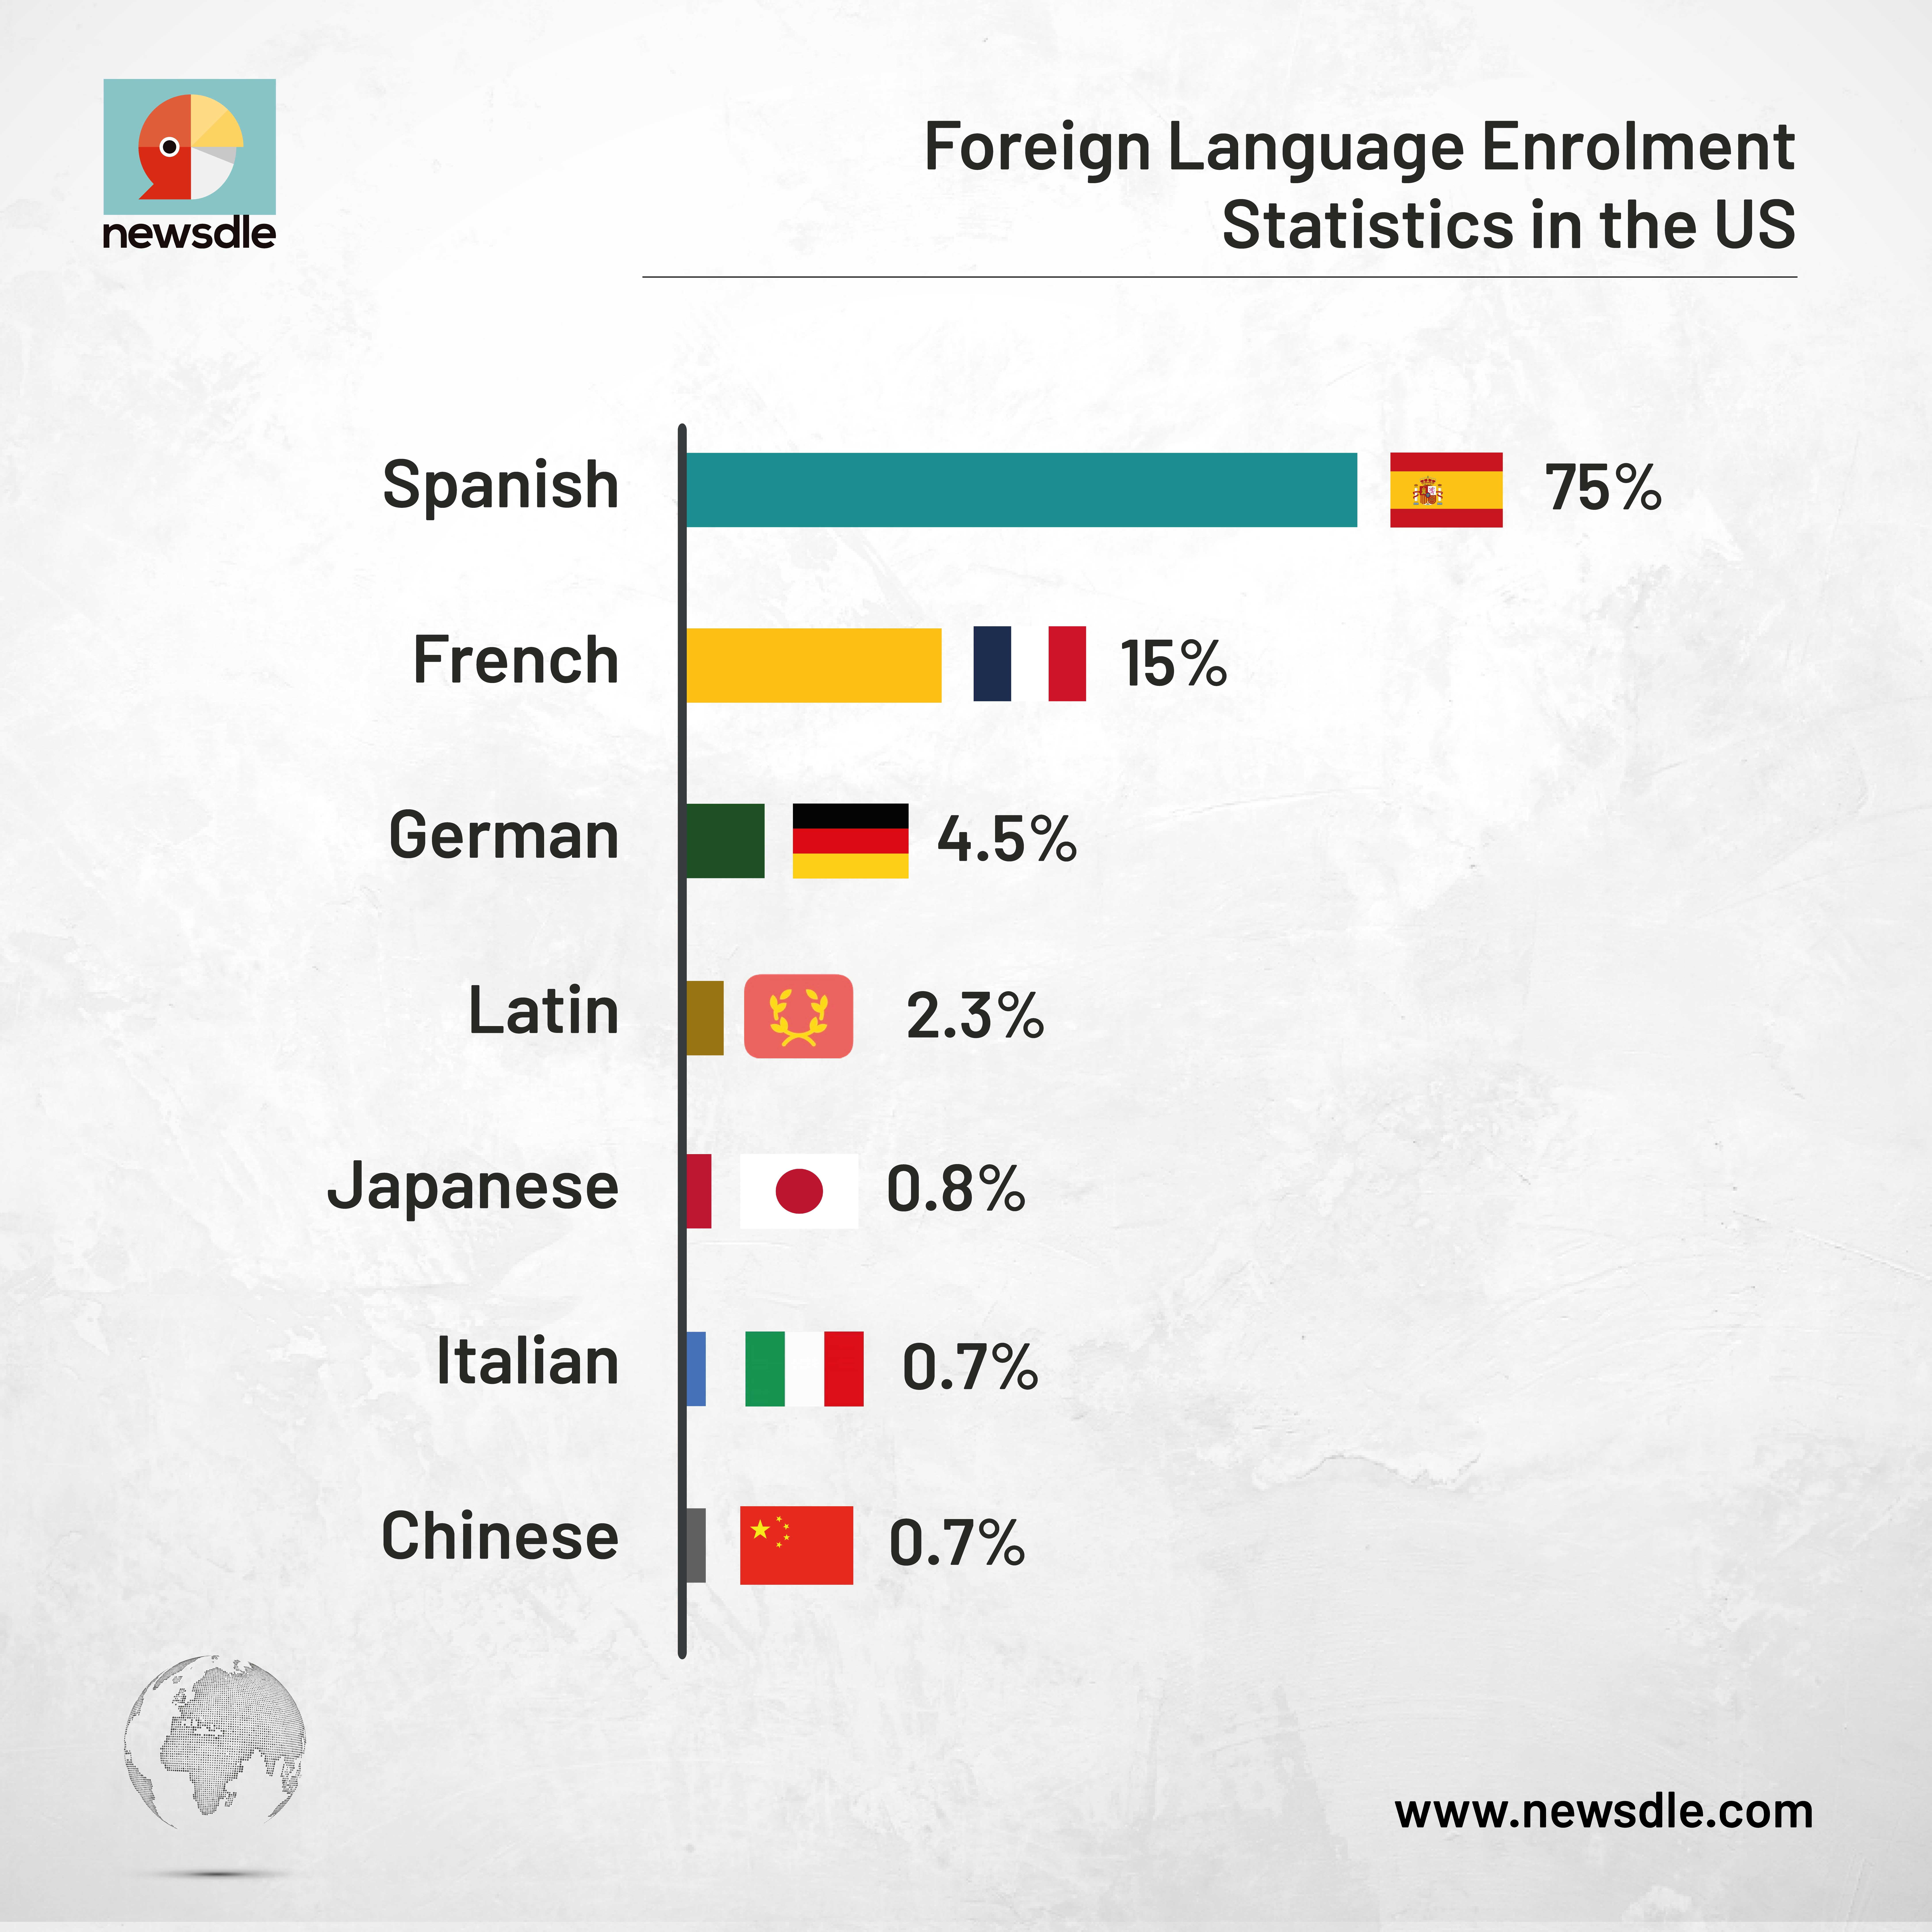 количество учащихся. Изучающих иностранные языки в США